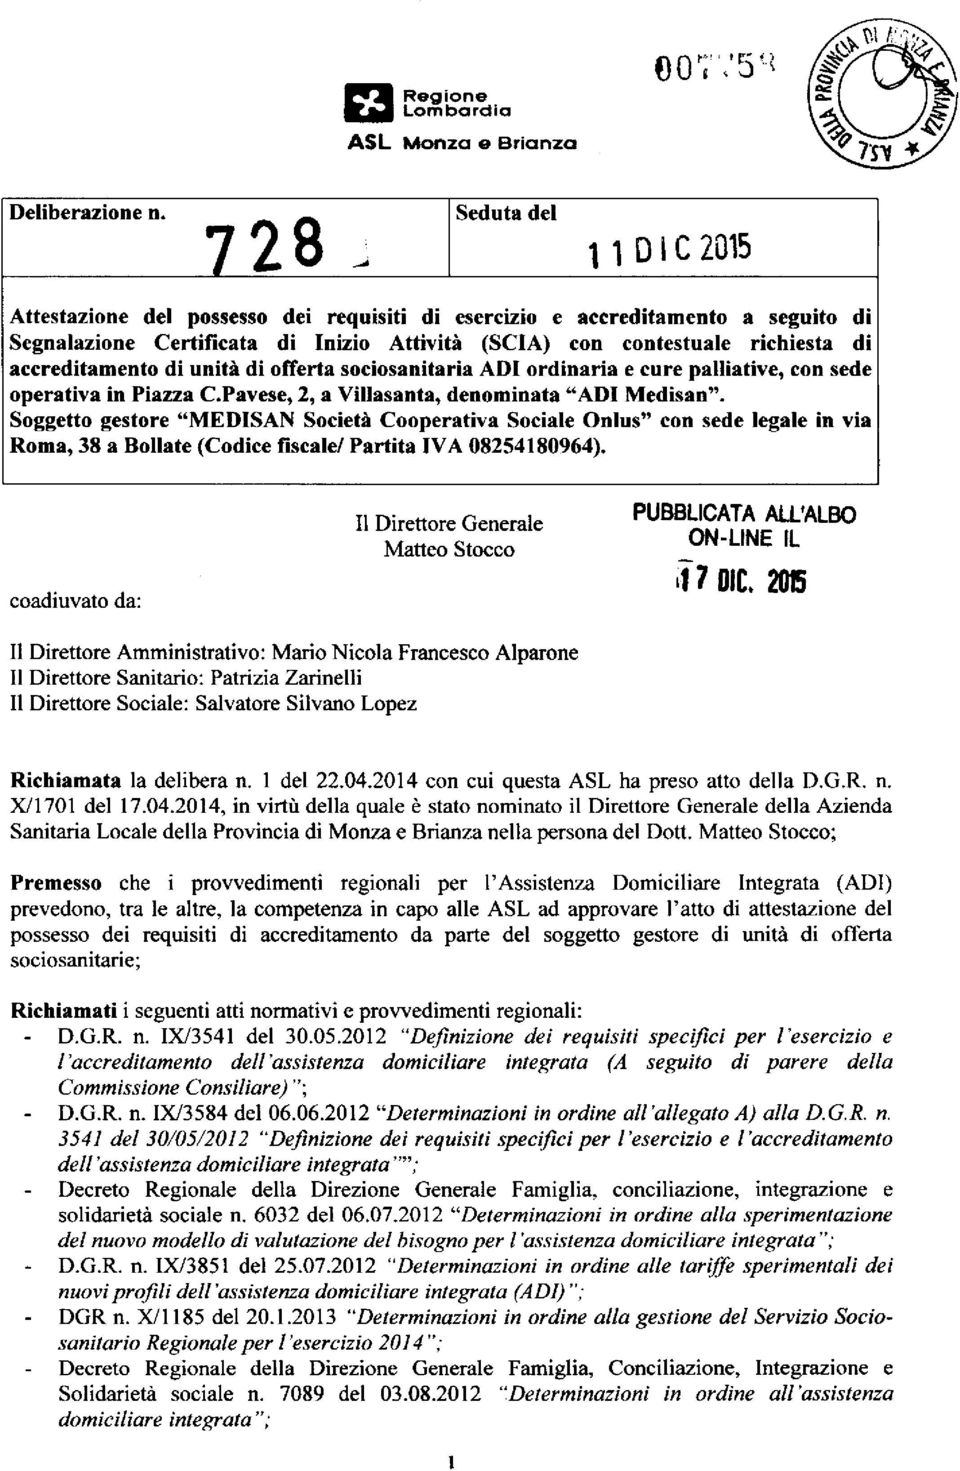 accreditamento di unità di offerta sociosanitaria ADI ordinaria e cure palliative, con sede operativa in Piazza C.Pavese, 2, a Villasanta, denominata "ADI Medisan".